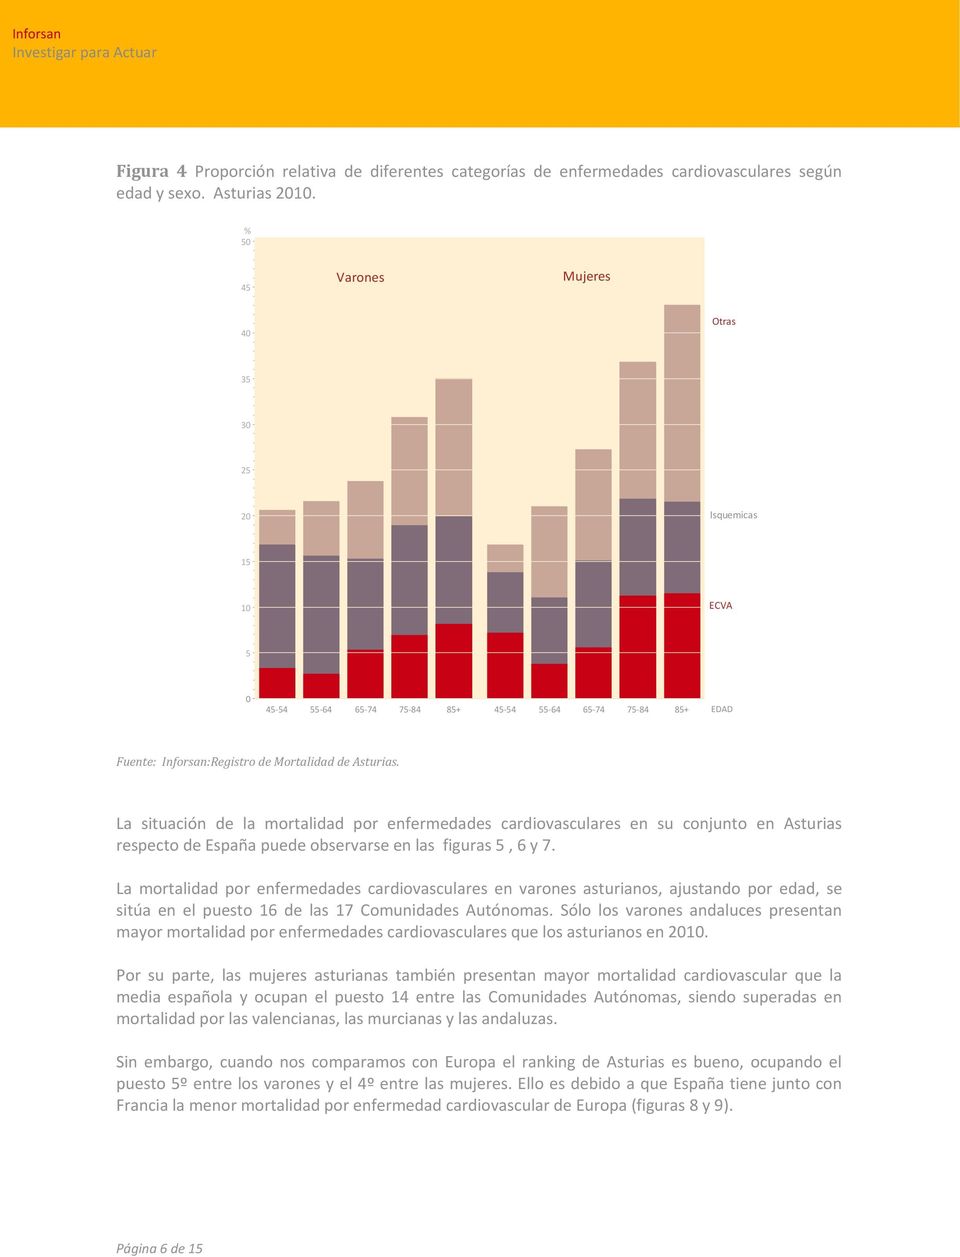 La situación de la mortalidad por enfermedades cardiovasculares en su conjunto en Asturias respecto de España puede observarse en las figuras 5, 6 y 7.